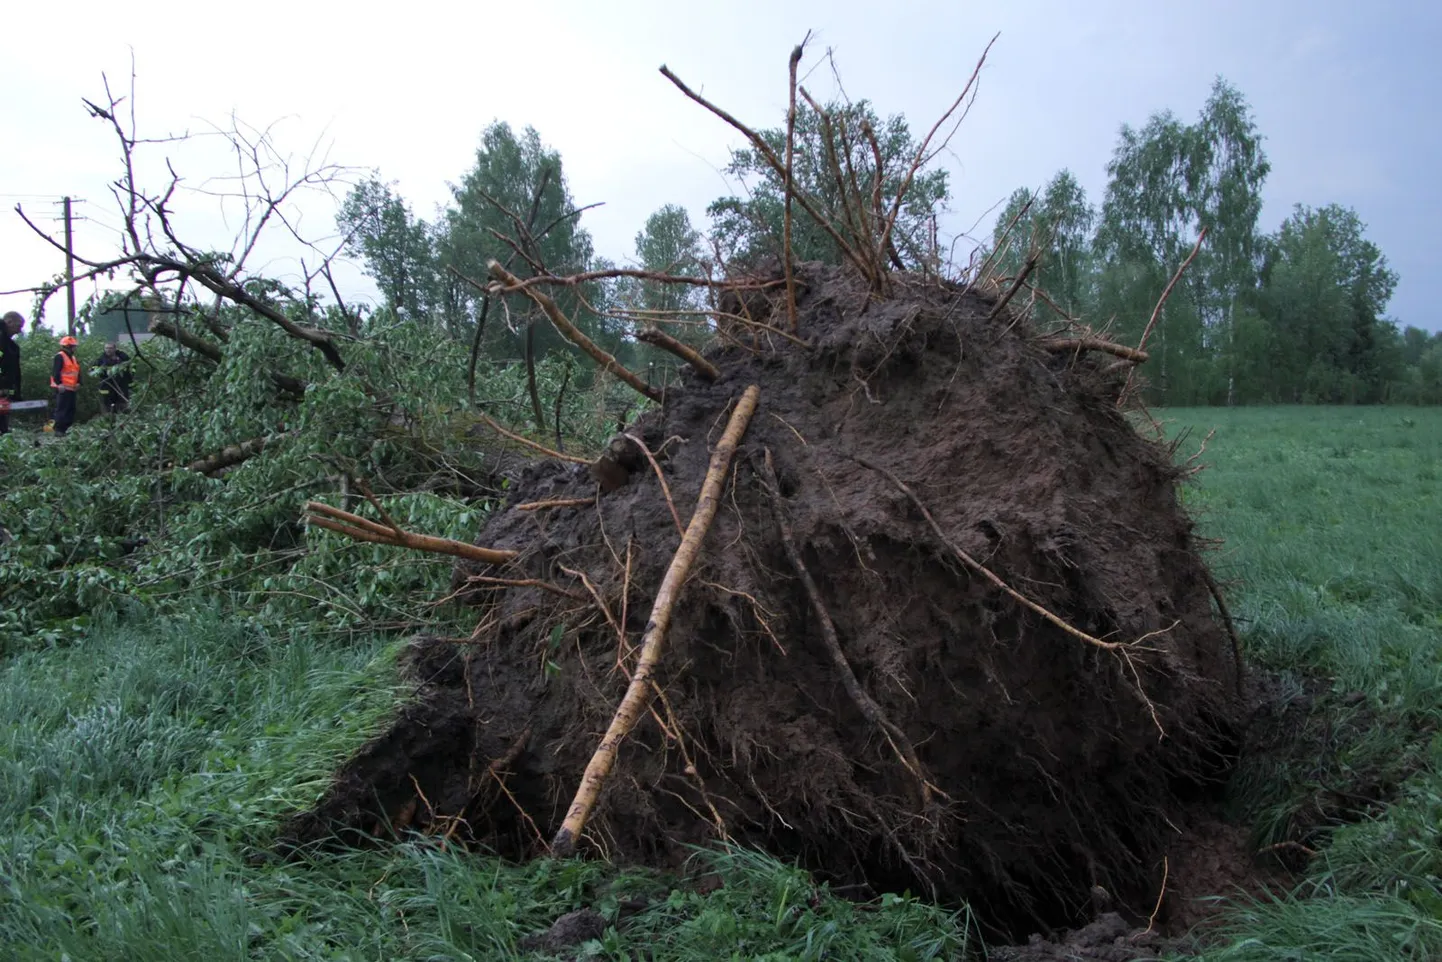 Liiklejaid võivad ohustada ka tuule tõttu murduvad või juurtega maast välja kistavad puud. Foto on illustratiivne.